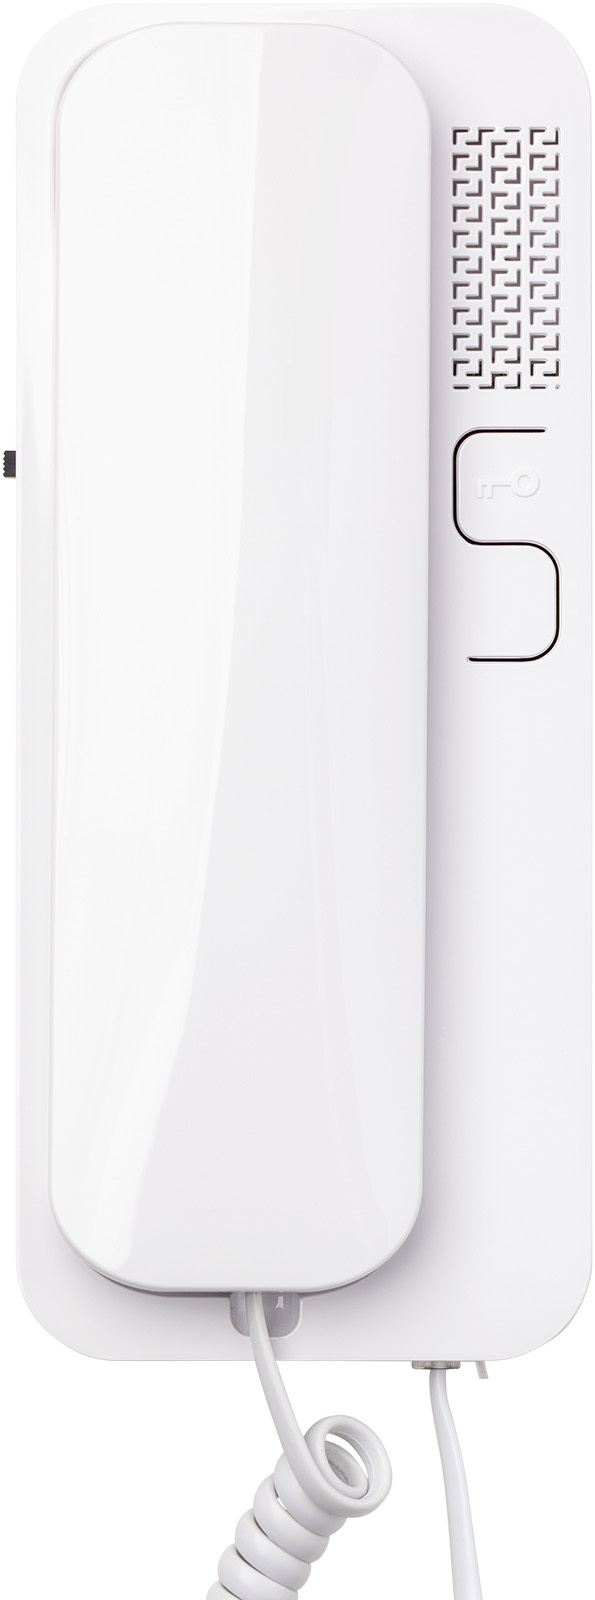 Трубка домофона Cyfral Unifon Smart U (координатная). Для домофонов: CYFRAL, VIZIT, ELTIS. зонт садовый doppler ravenna smart серый 300 см без базы